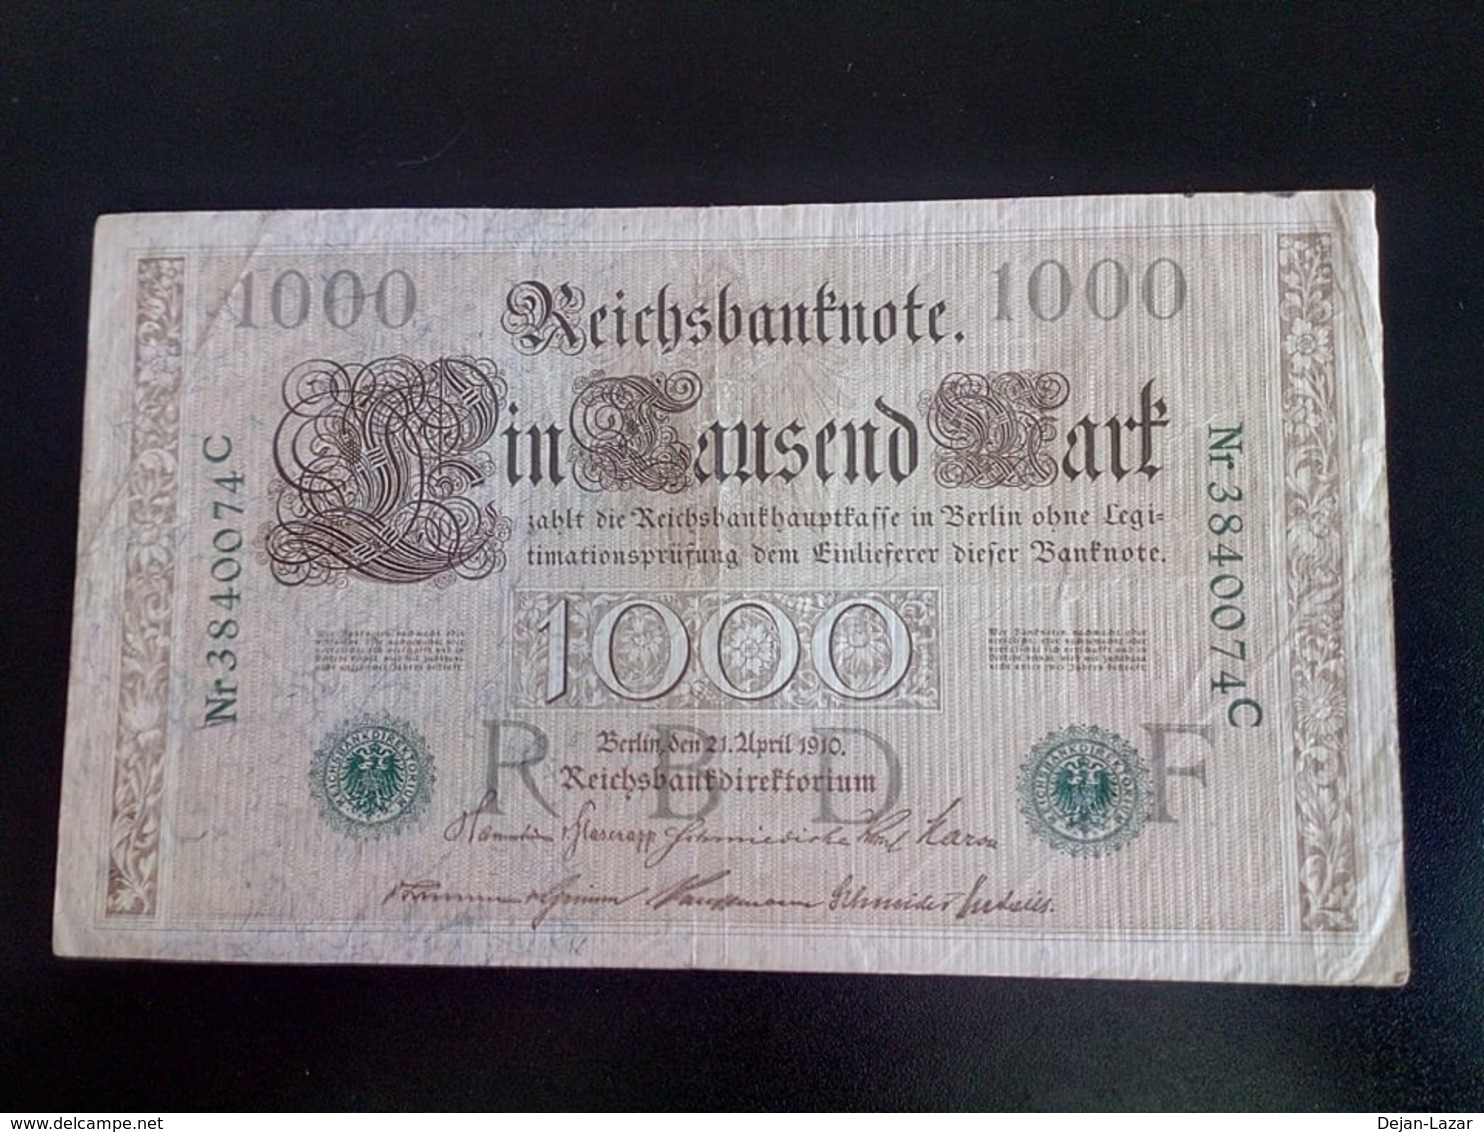 GERMANY ALLEMAGNE DEUTSCHLAND 1000 Mark 1910 - 1000 Mark